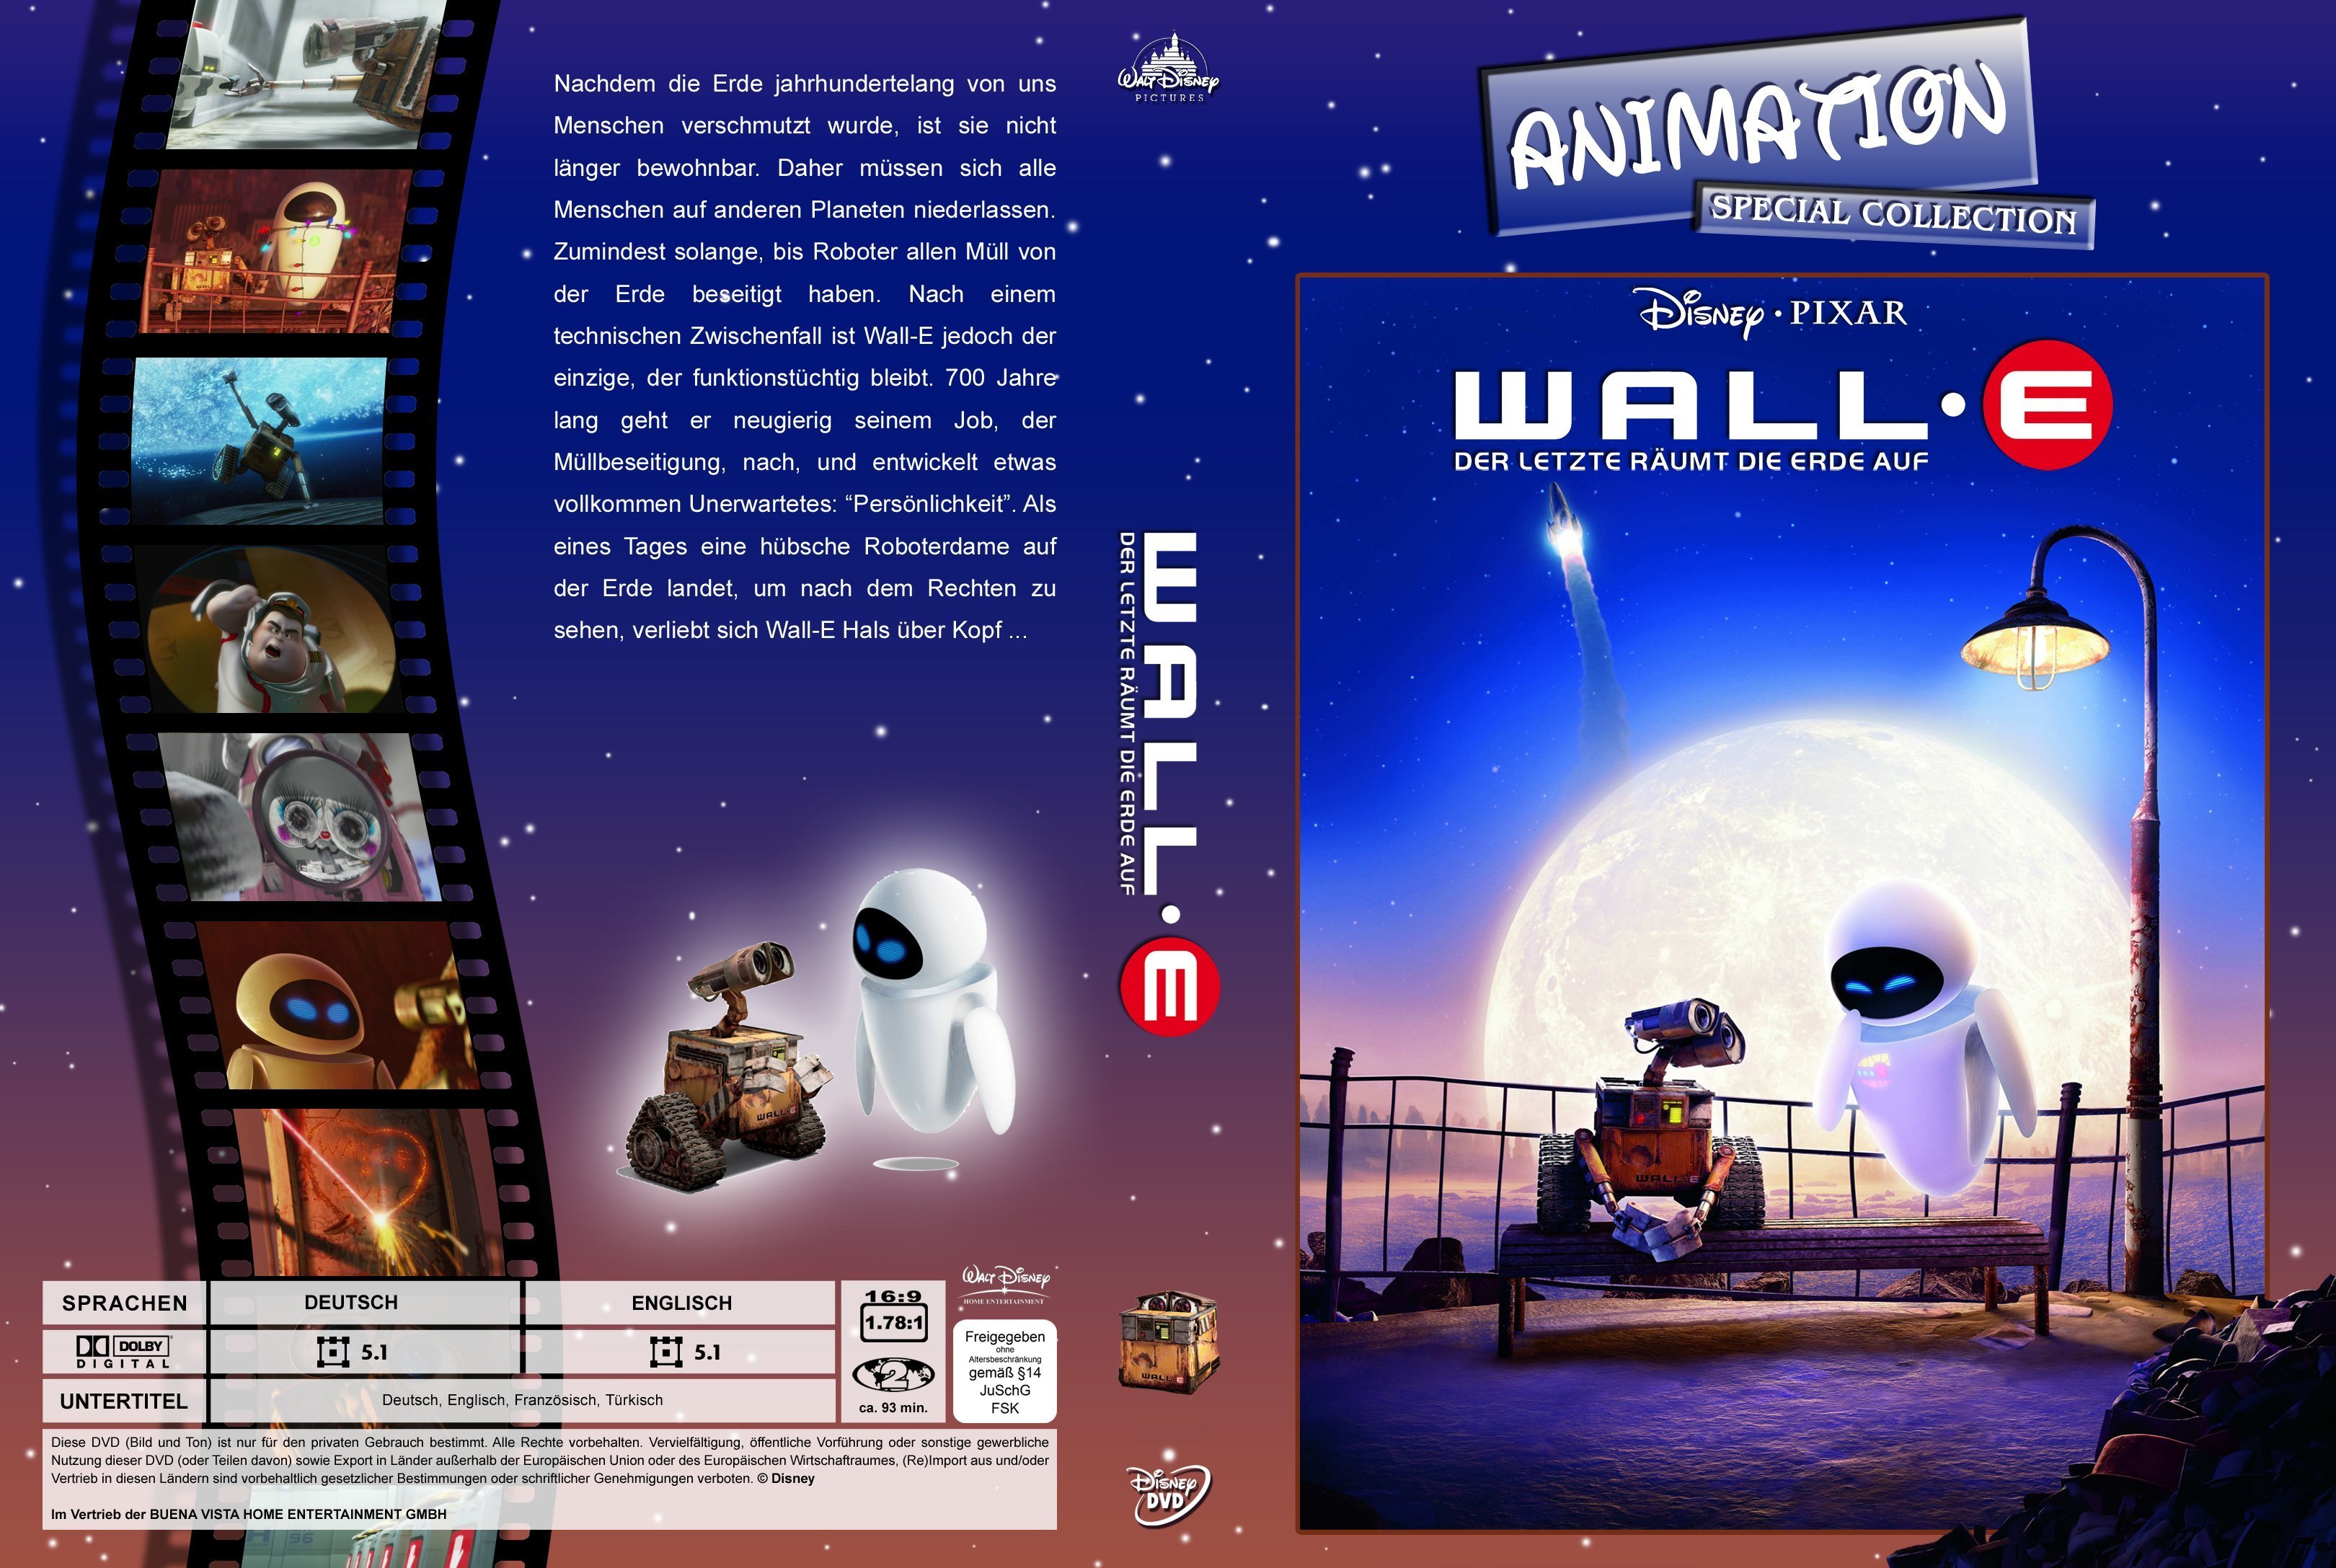 WALL E Der Letzte raumt die Erde auf